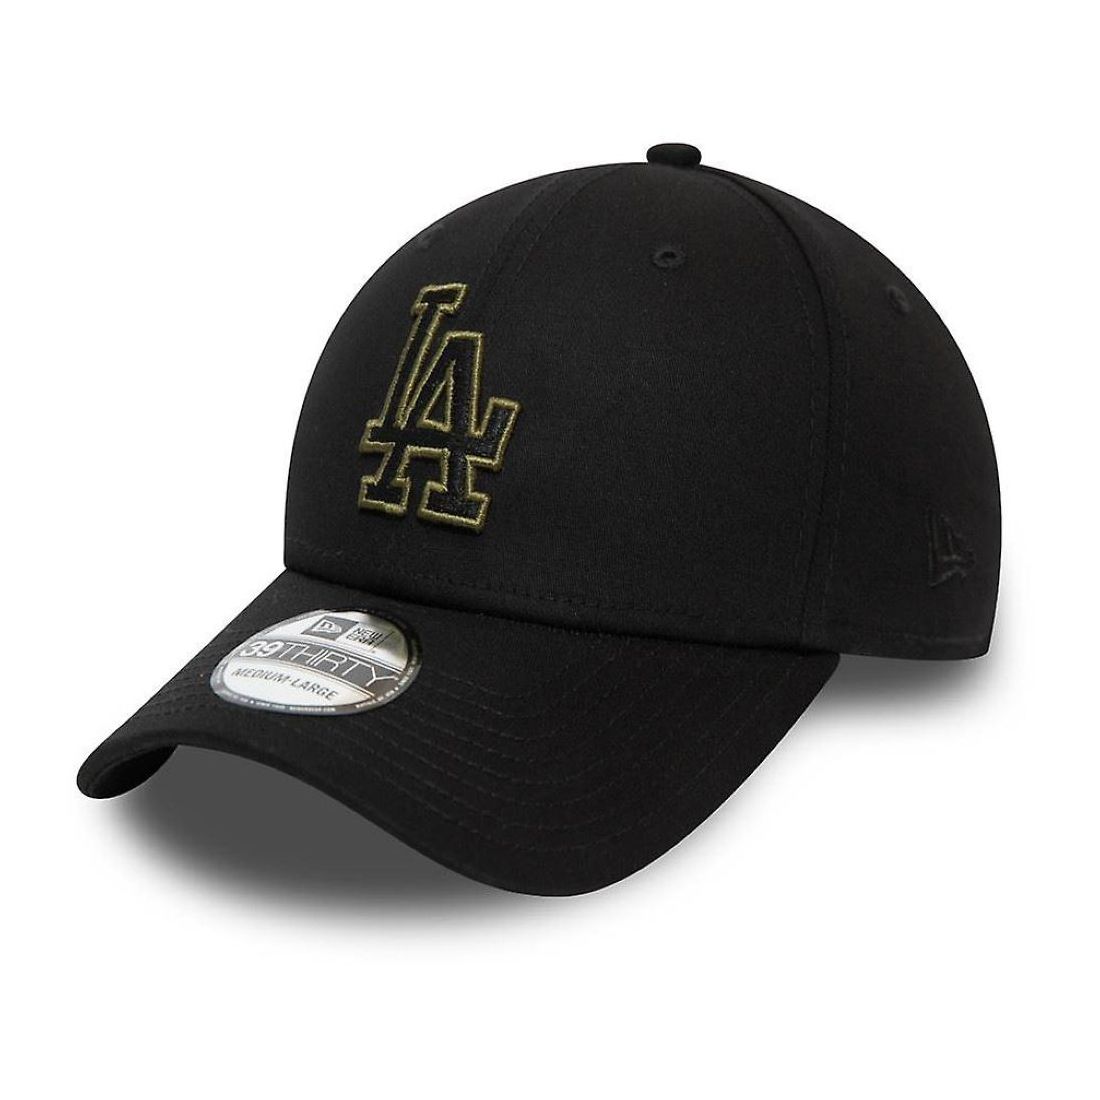 قبعة للرجال تحمل علامة لفريق لوس أنجلوس دودجرو بلون متناغم من نيو إيرا لون أسود M/L